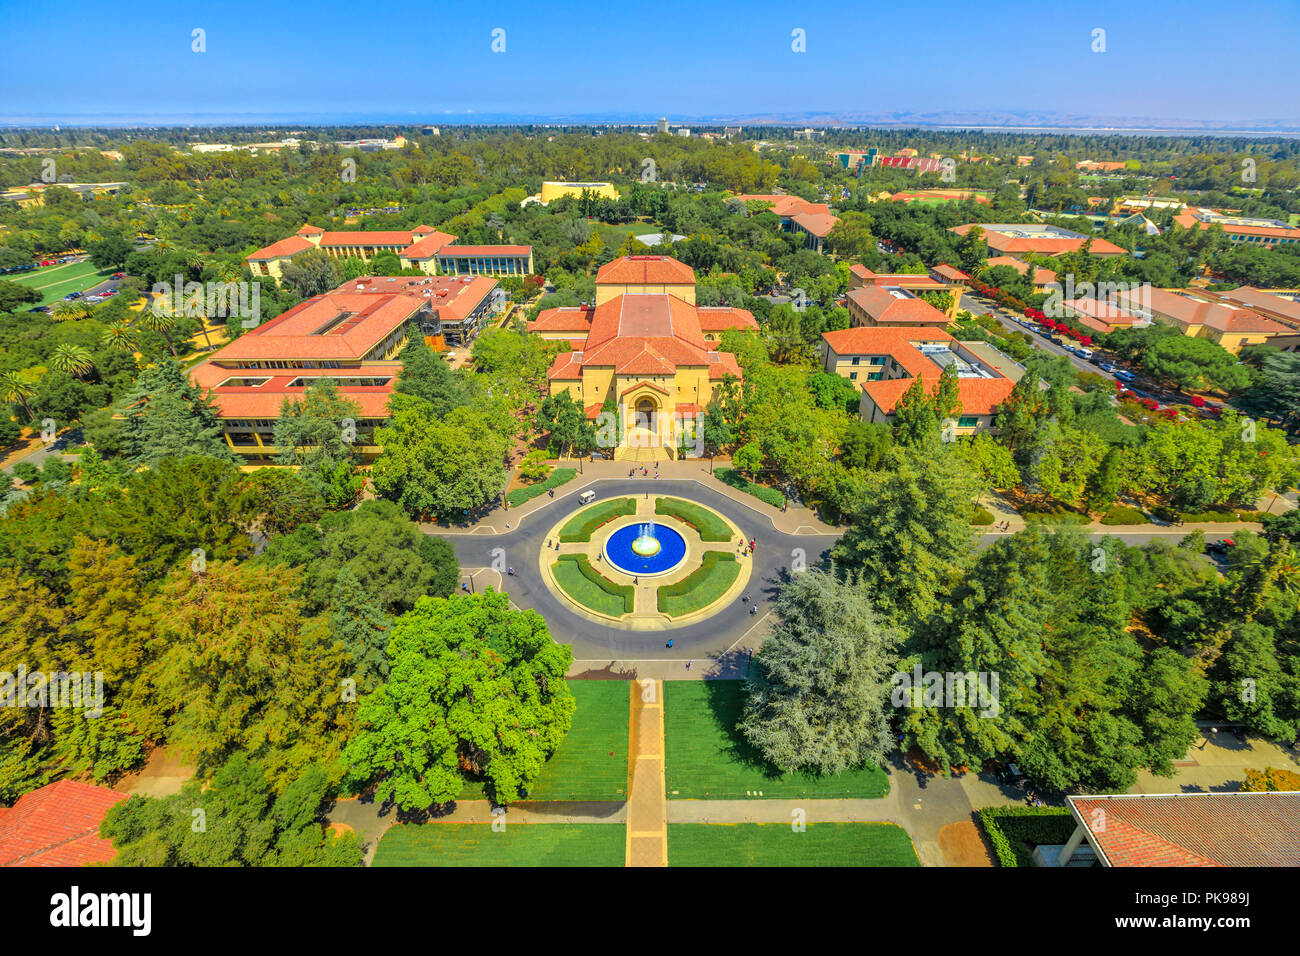 Palo Alto, Kalifornien, USA - 13. August 2018: Luftaufnahme der Brunnen und Memorial Auditorium der Universität Stanford Campus von Hoover Tower Observatorium gesehen. Sommer Saison. Stockfoto